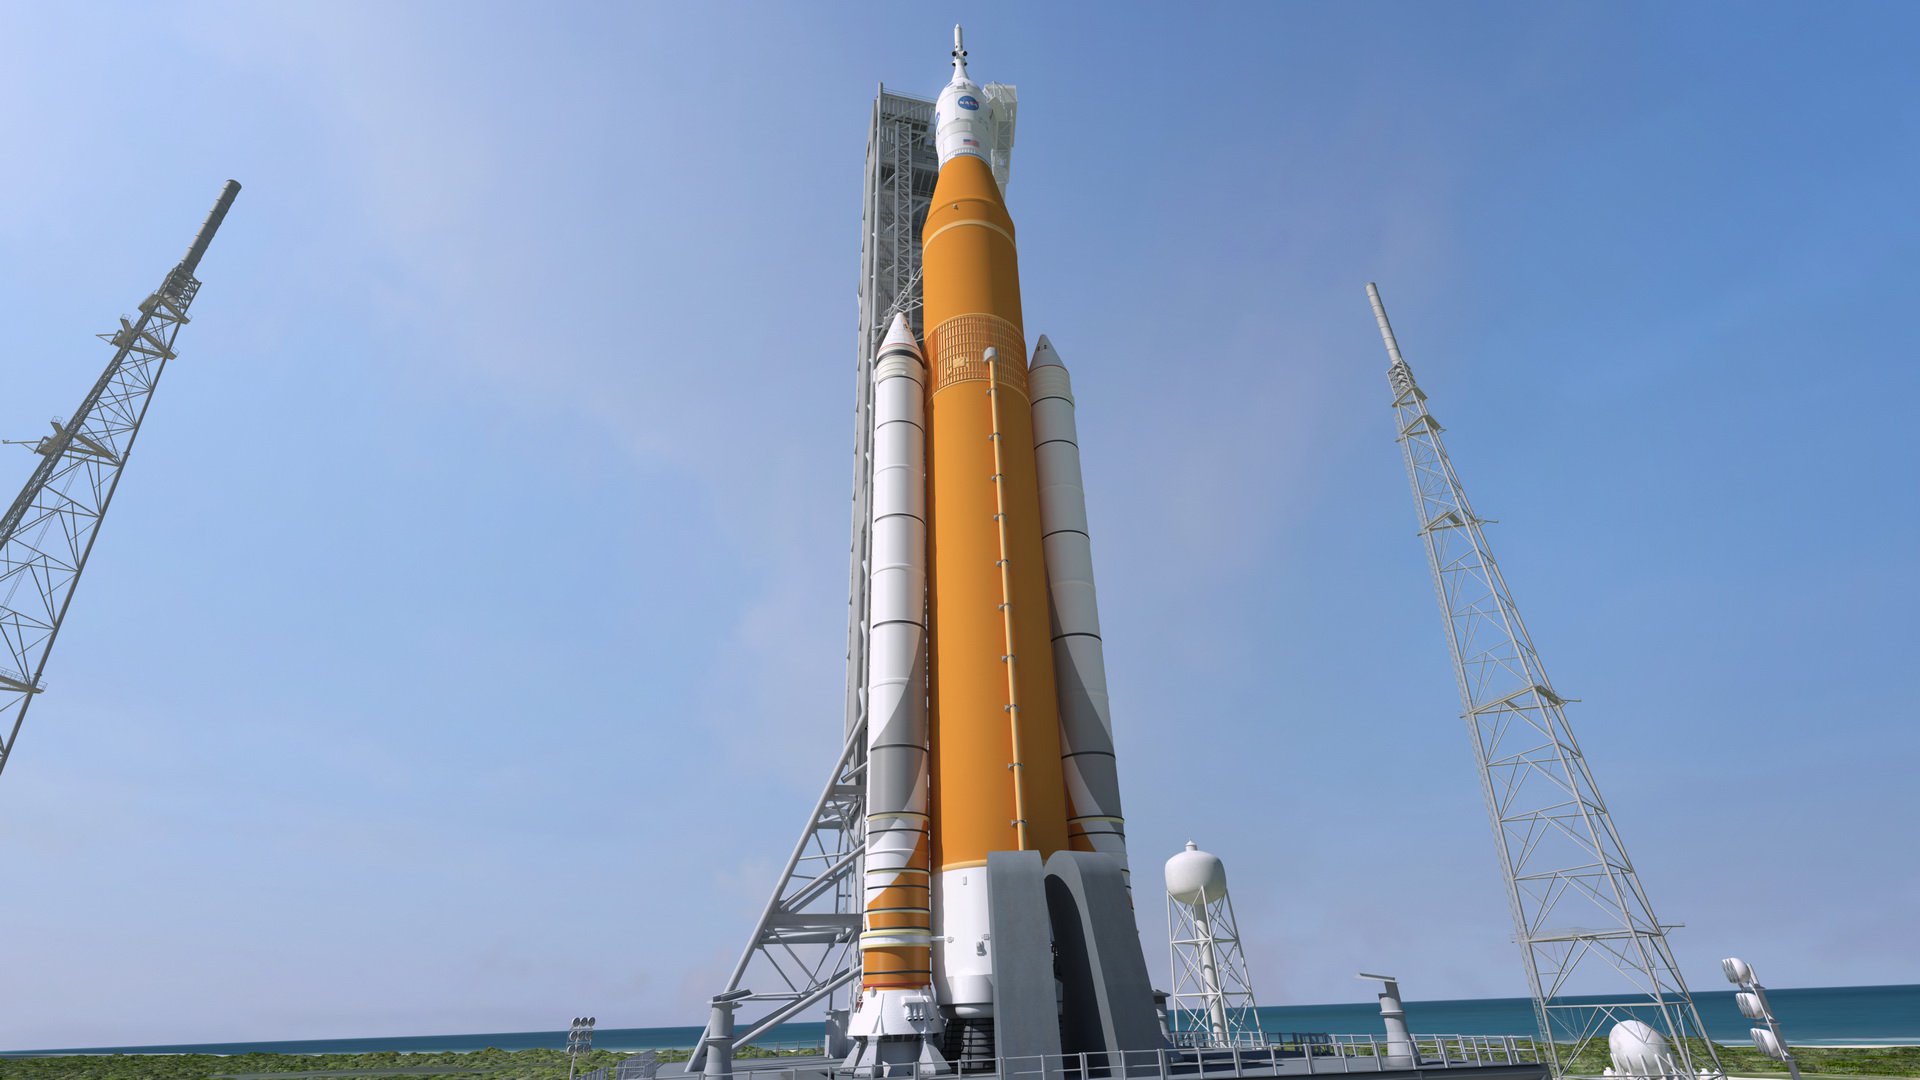 İnceleme gösterdi ki roketi NASA, SLS, çok büyük bir sorun